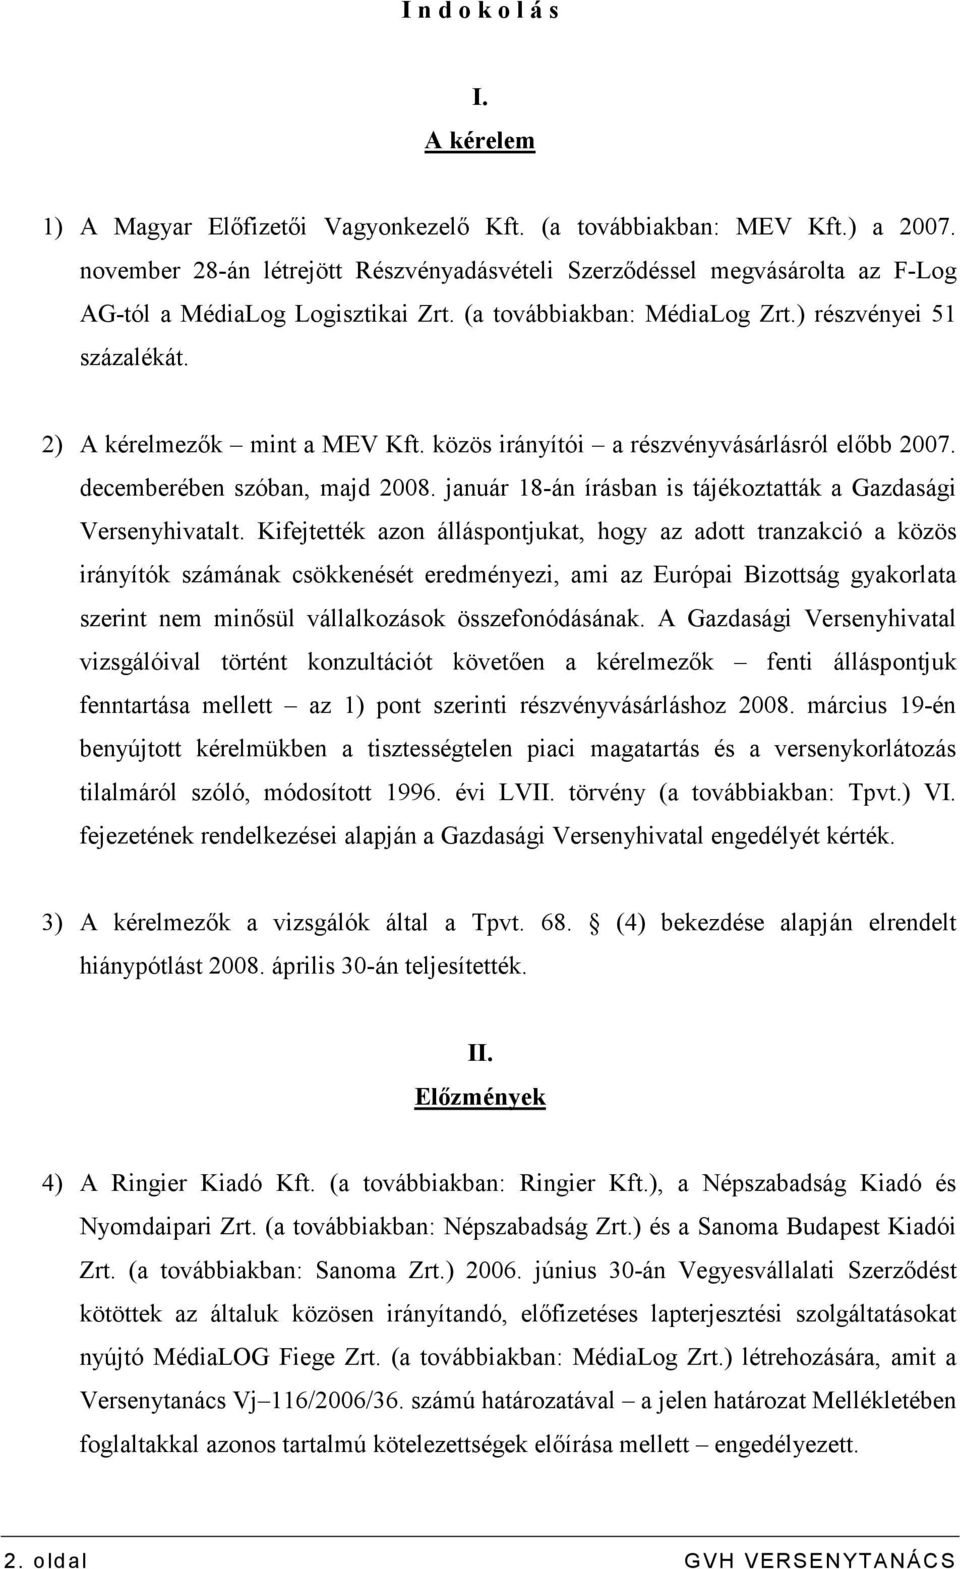 2) A kérelmezık mint a MEV Kft. közös irányítói a részvényvásárlásról elıbb 2007. decemberében szóban, majd 2008. január 18-án írásban is tájékoztatták a Gazdasági Versenyhivatalt.